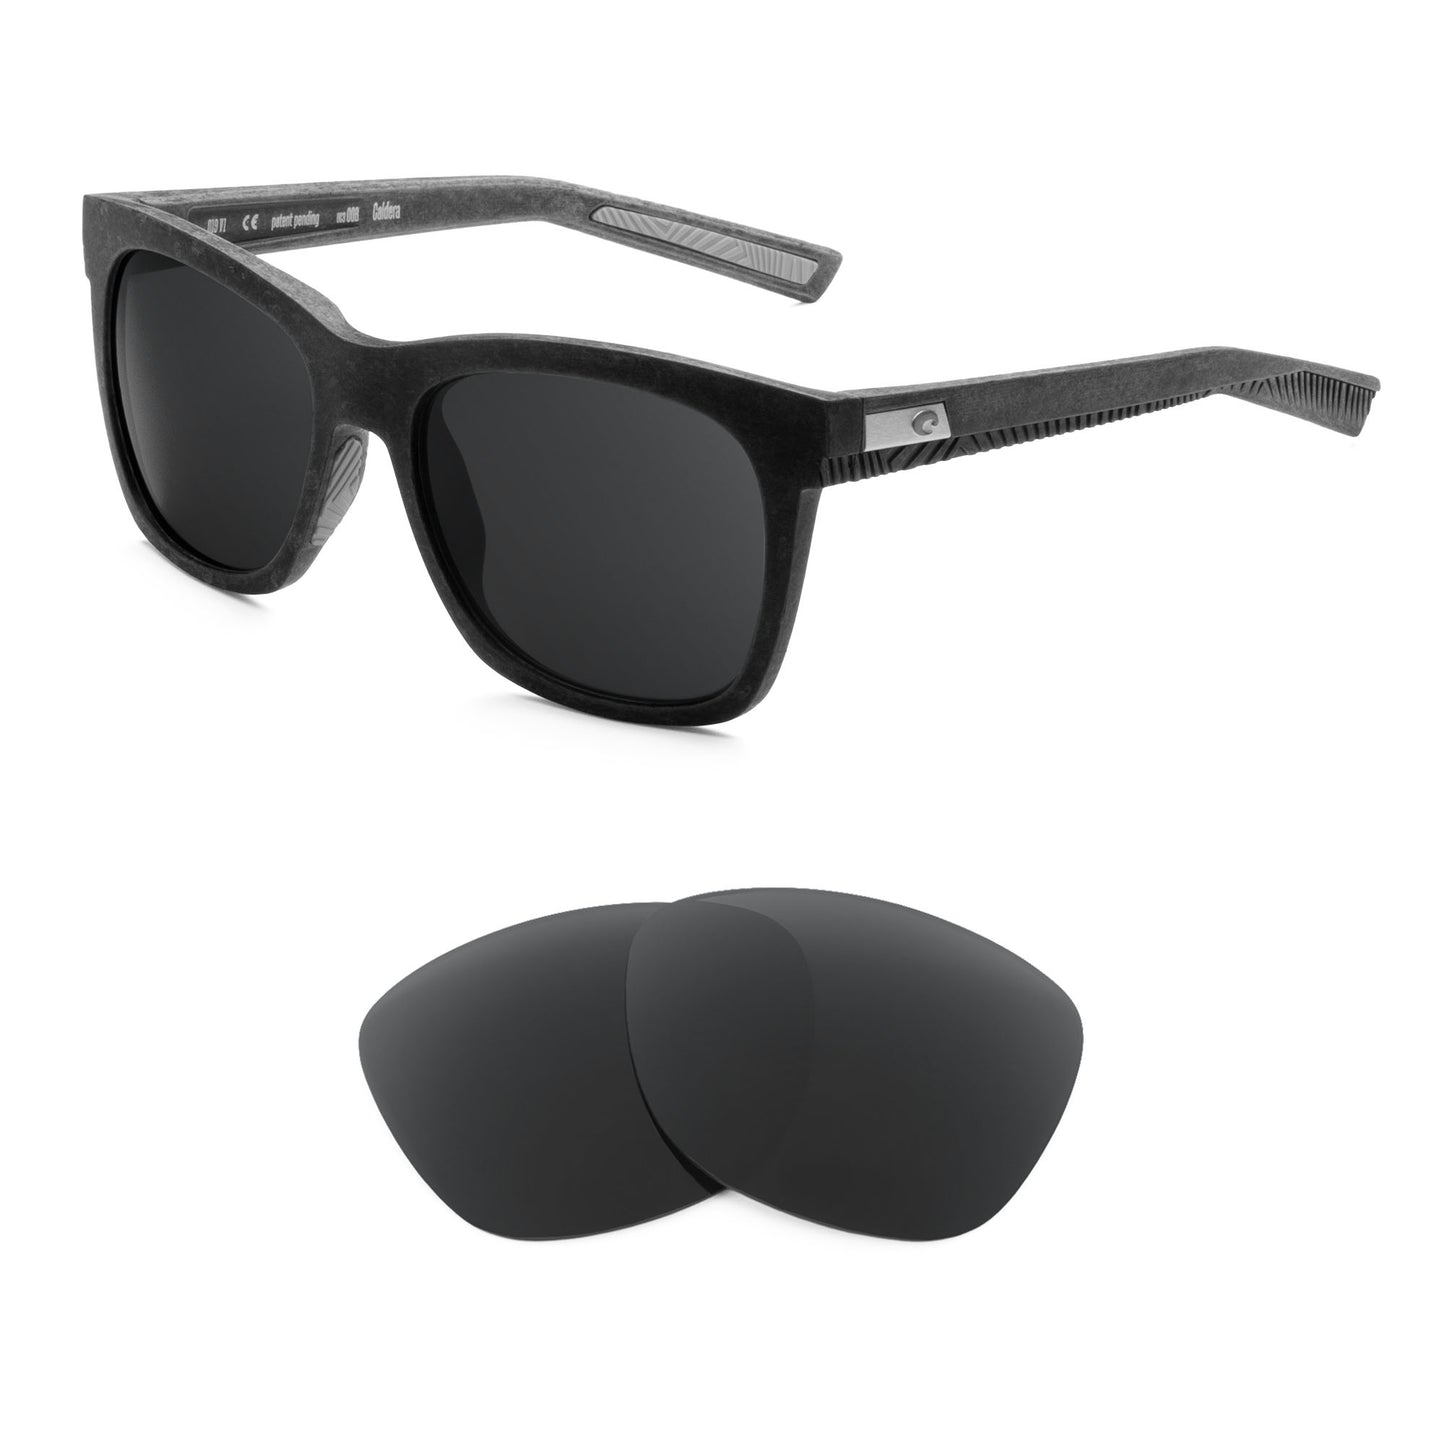 Costa Caldera sunglasses with replacement lenses